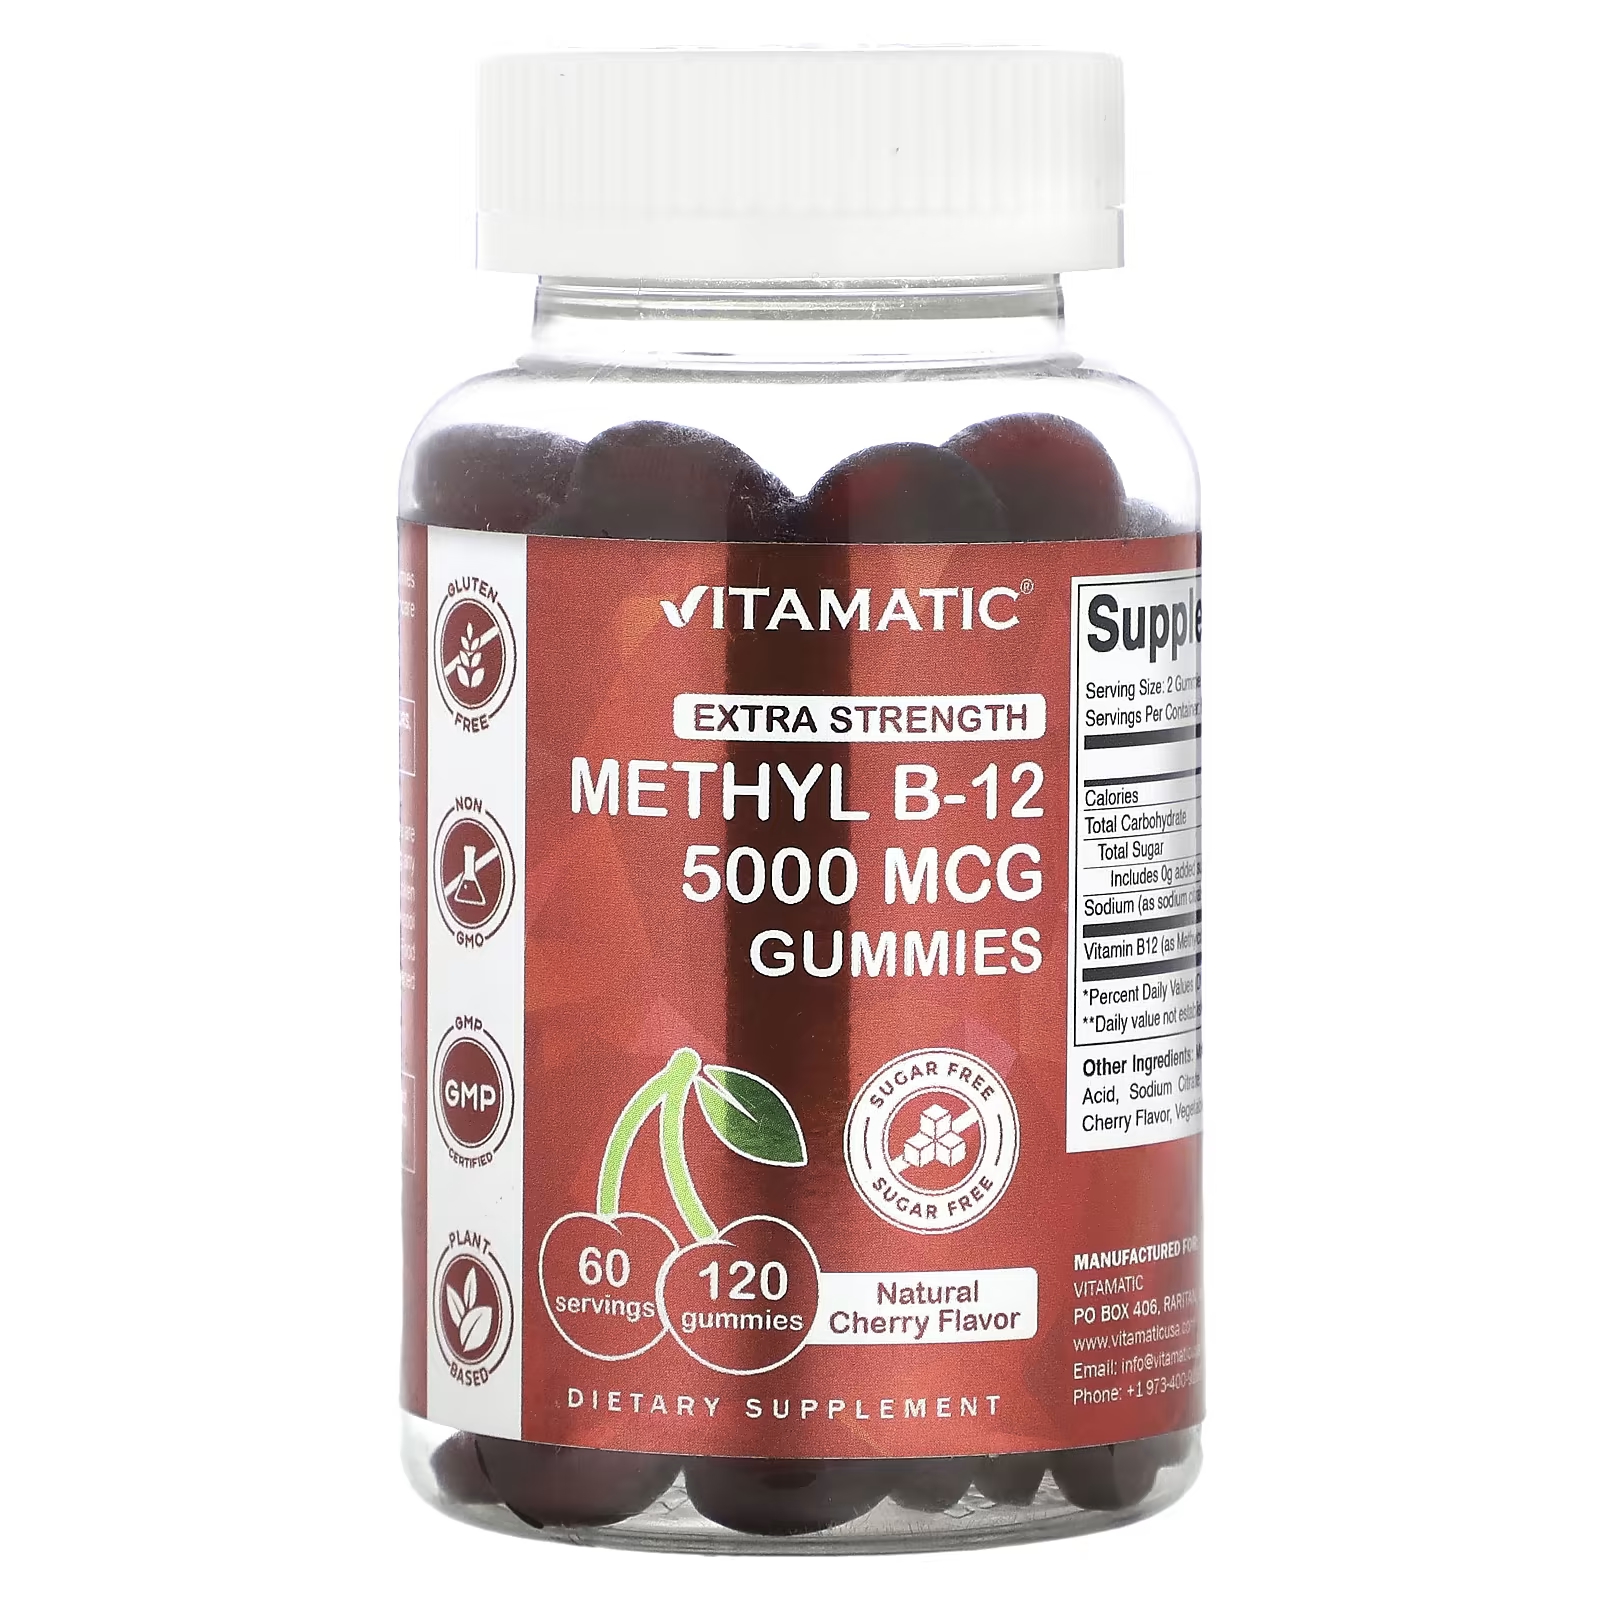 Пищевая добавка Vitamatic Mmethyl B-12 с натуральной вишней, 120 жевательных таблеток пищевая добавка vitamatic с витамином d3 натуральная клубника 120 жевательных таблеток